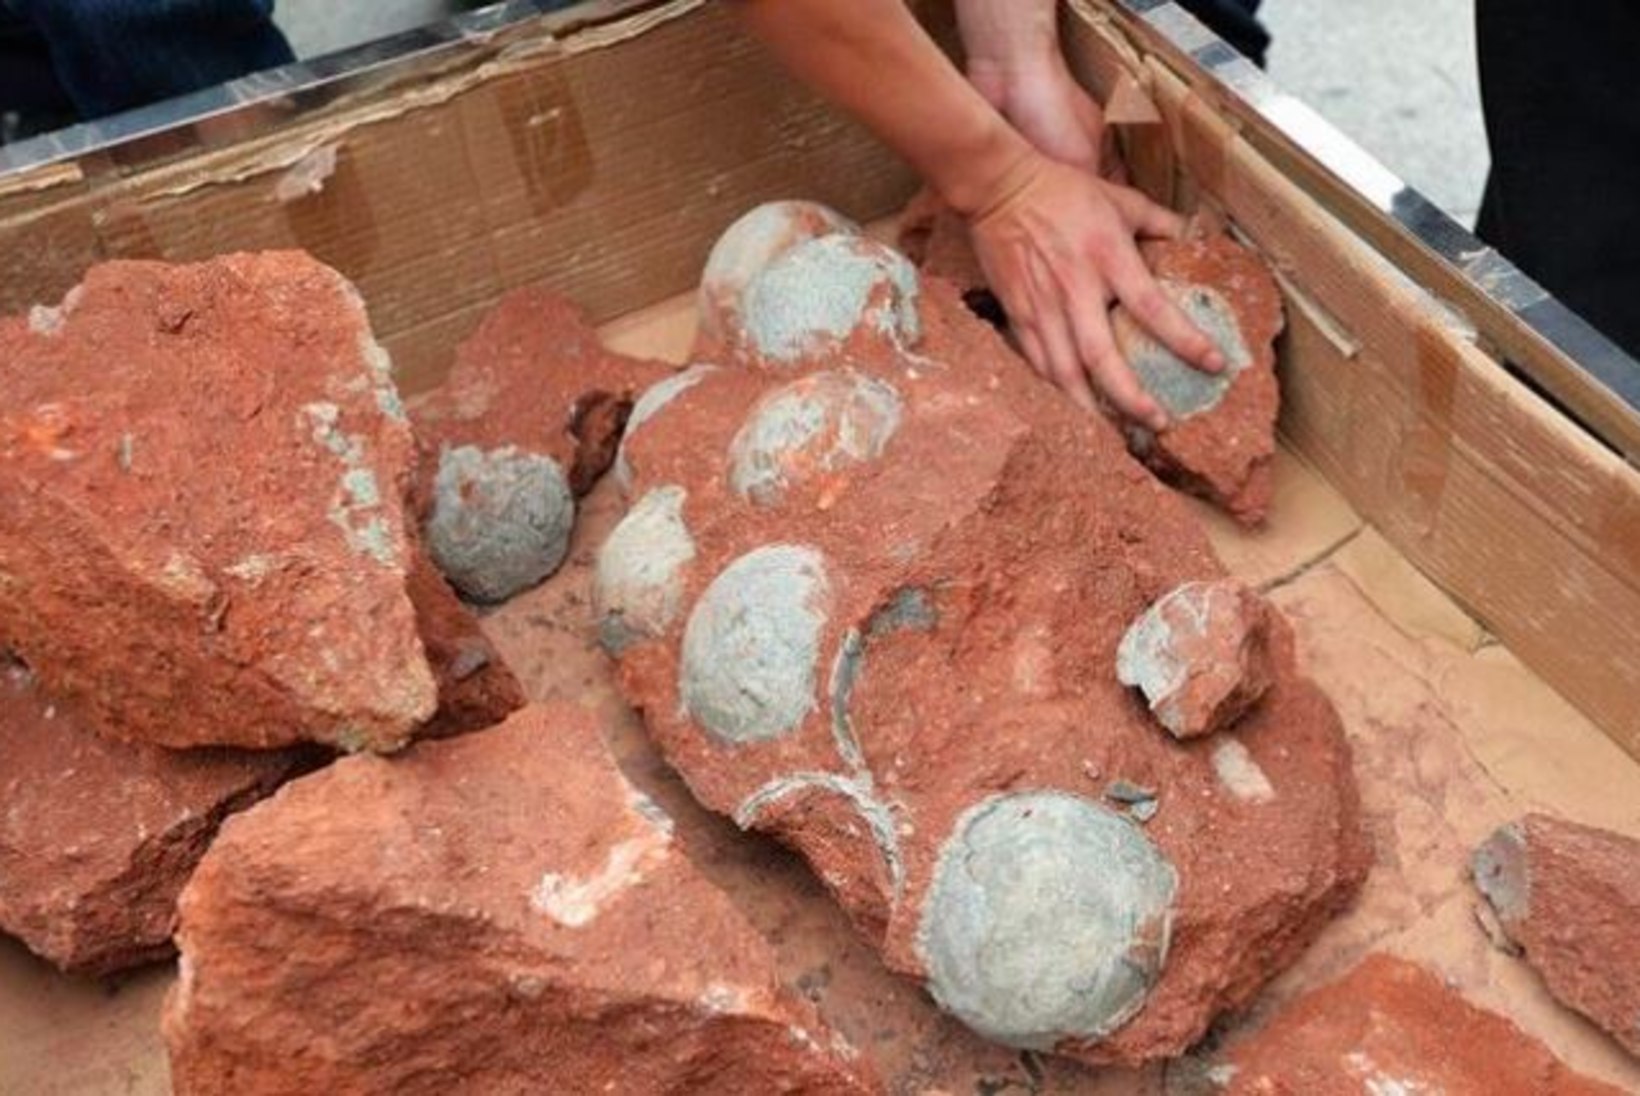 Hiinast leiti suur hulk kivistunud saurusemune